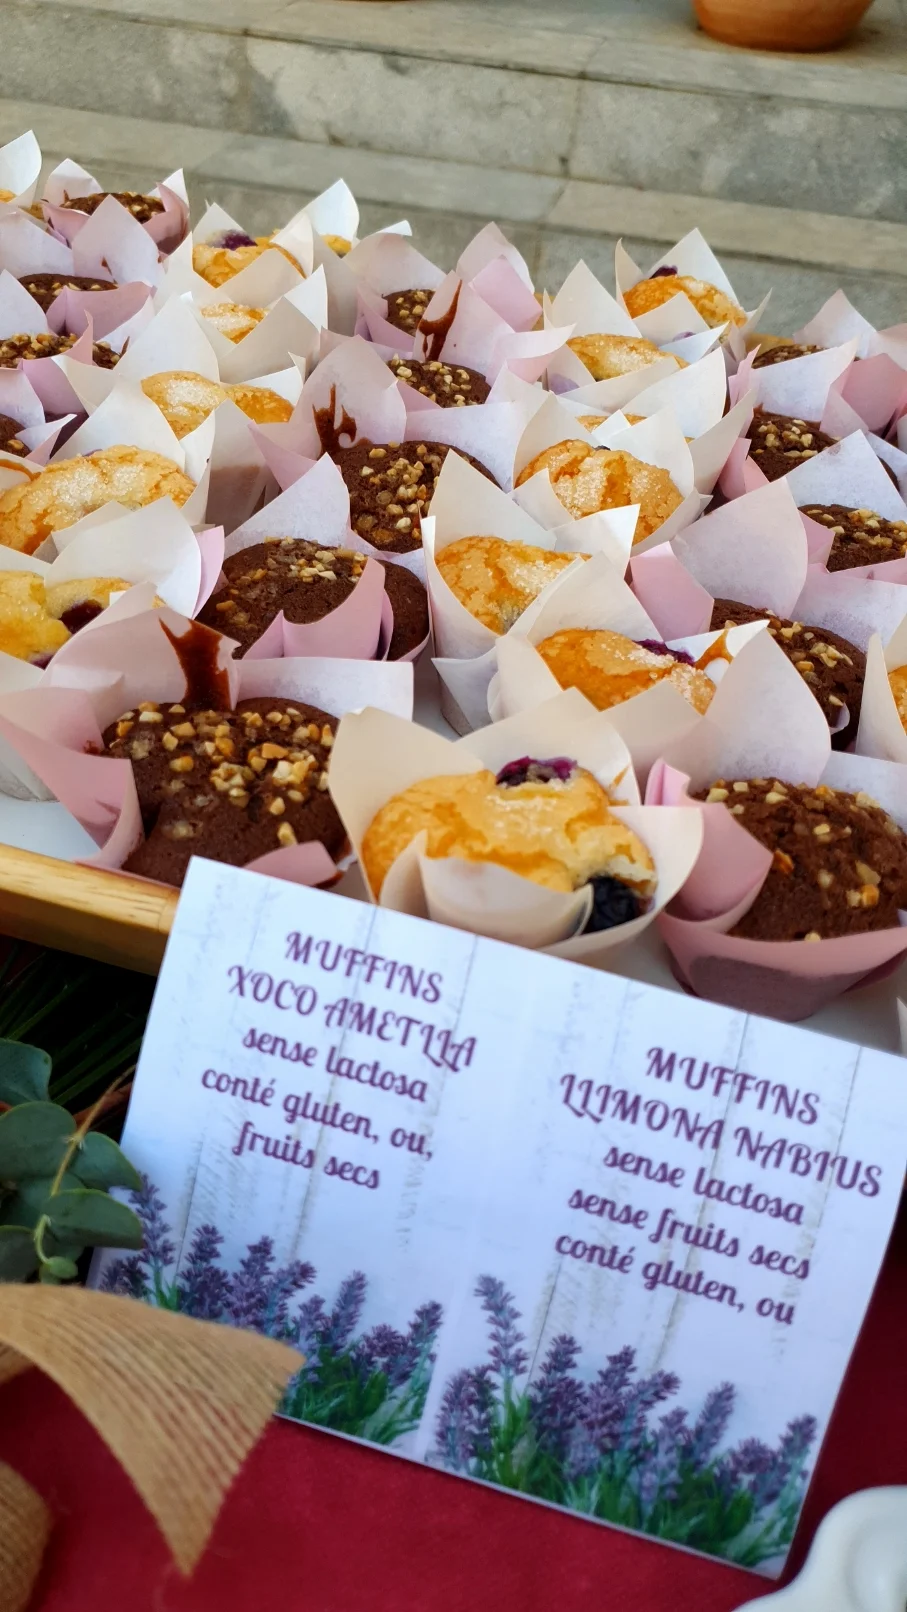 muffins para eventos de empresa y acontecimientos